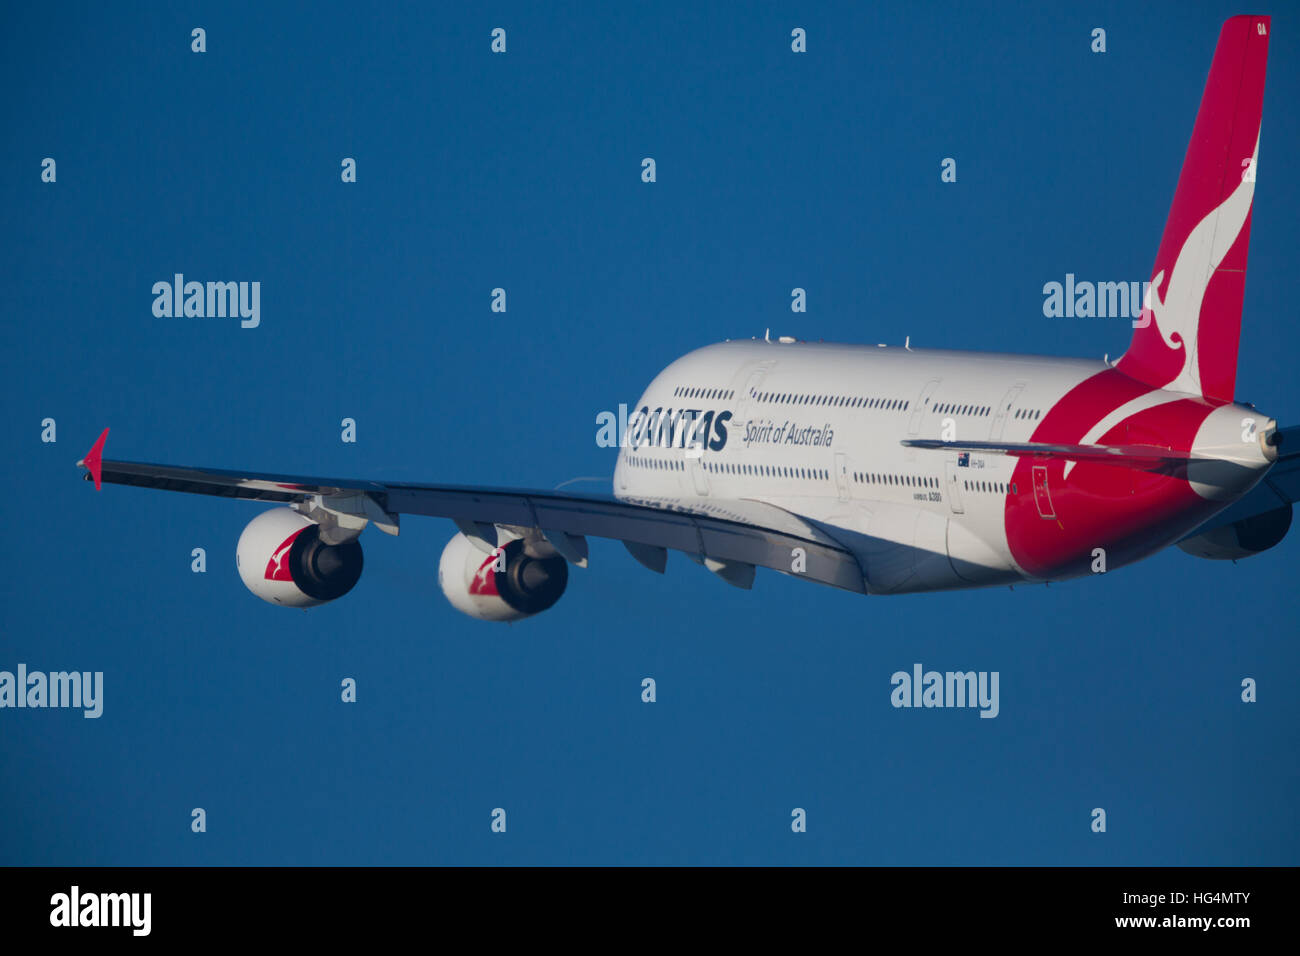 QANTAS Airbus A380 Aircraft Stock Photo